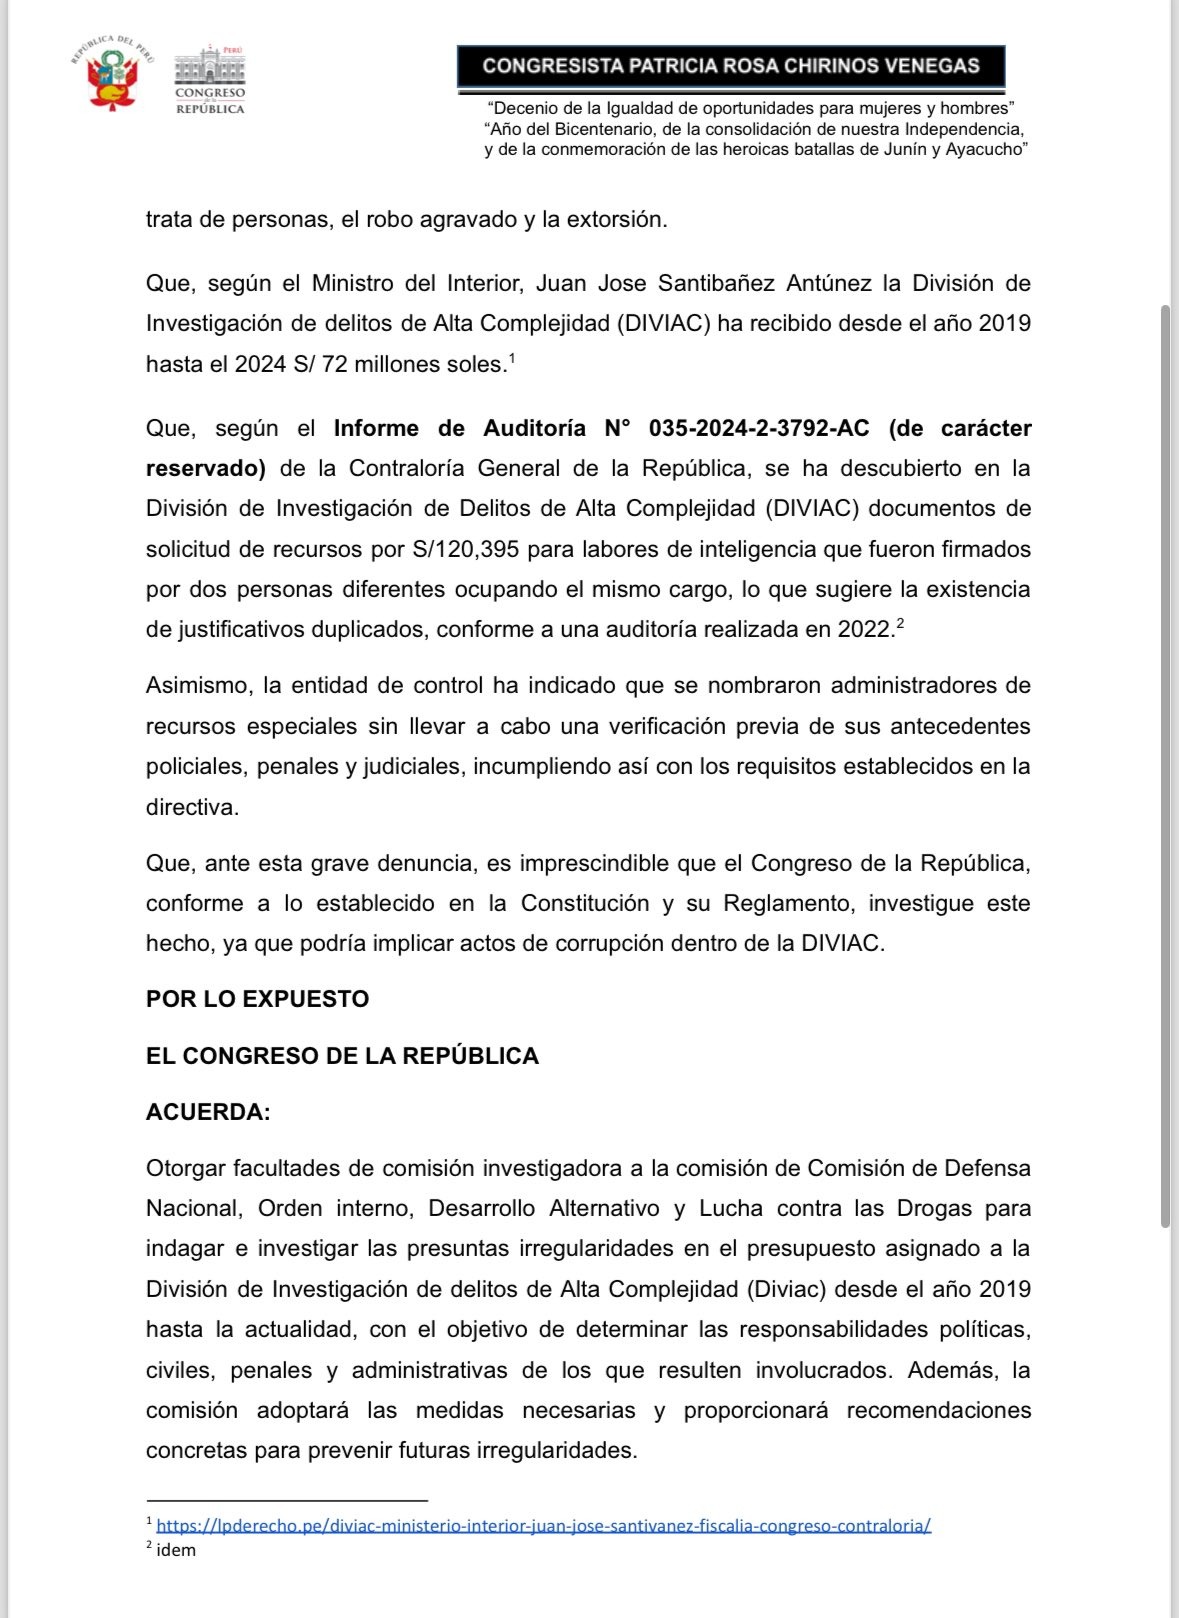 Congresista Chirinos solicita facultades investigadoras para la Comisión de Defensa por presuntas irregularidades en la Diviac